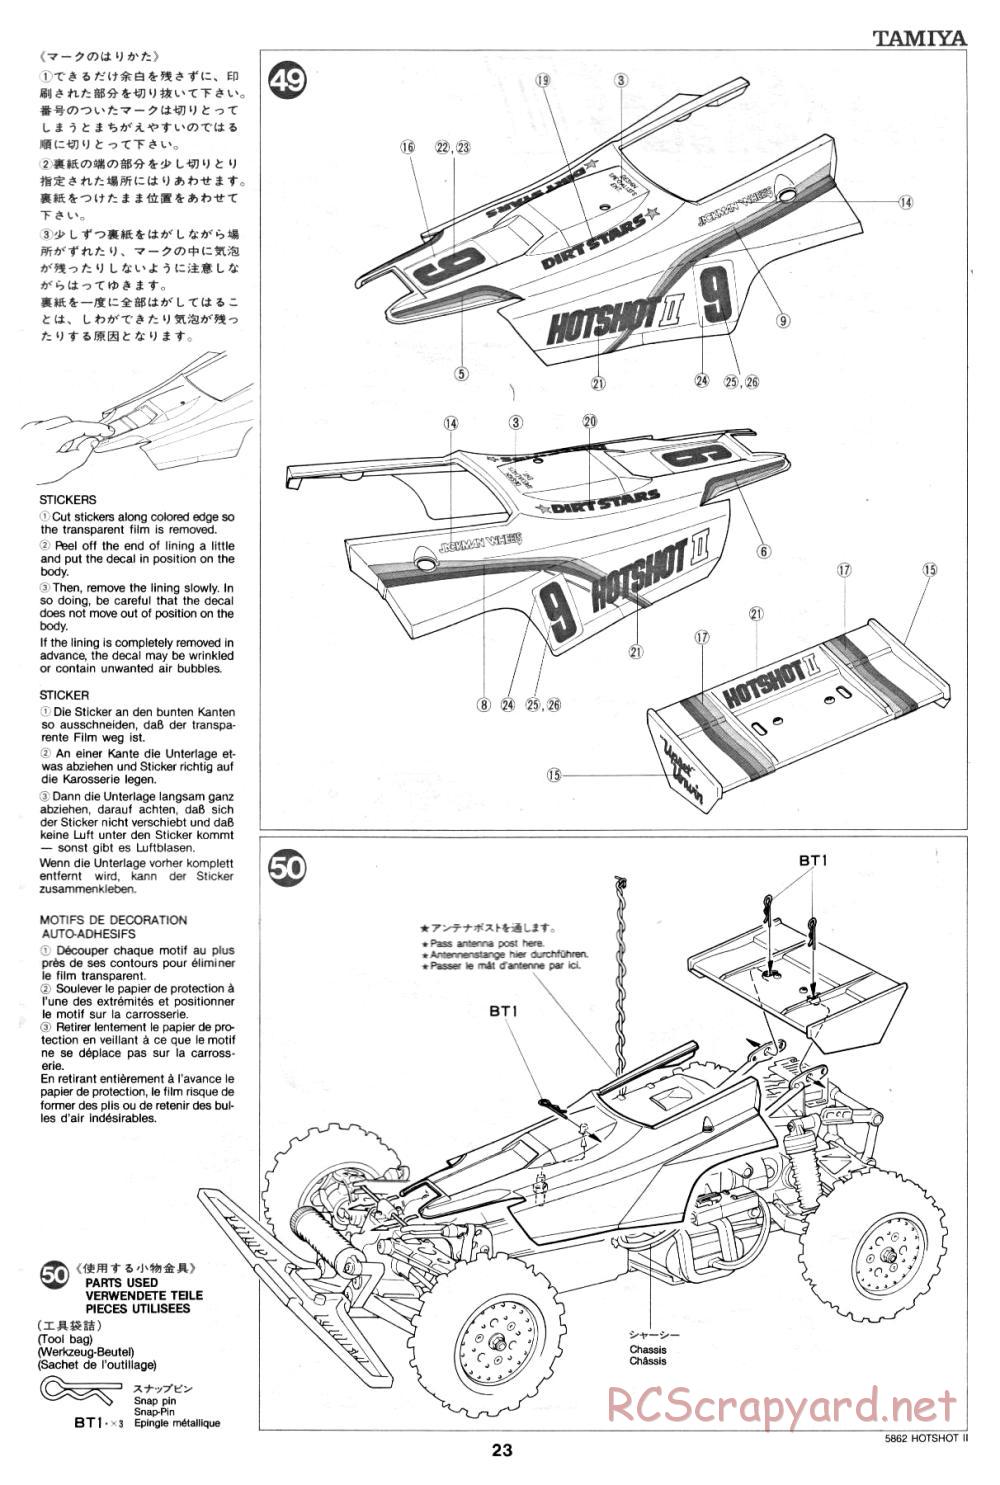 Tamiya - Hot-Shot II - 58062 - Manual - Page 23